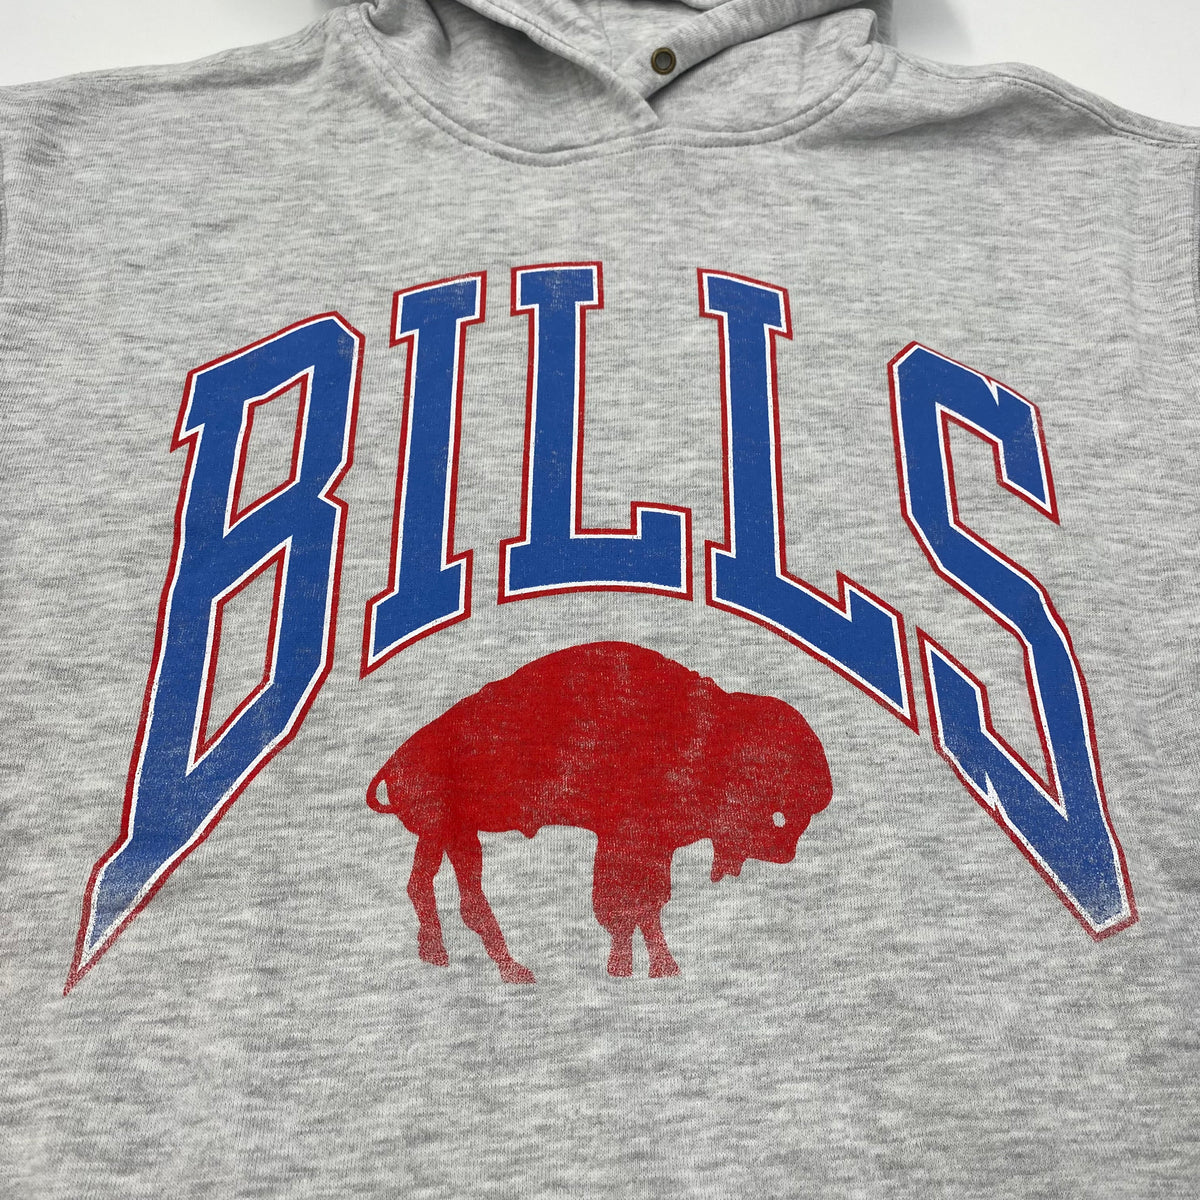 buffalo bills throwback sweatshirt